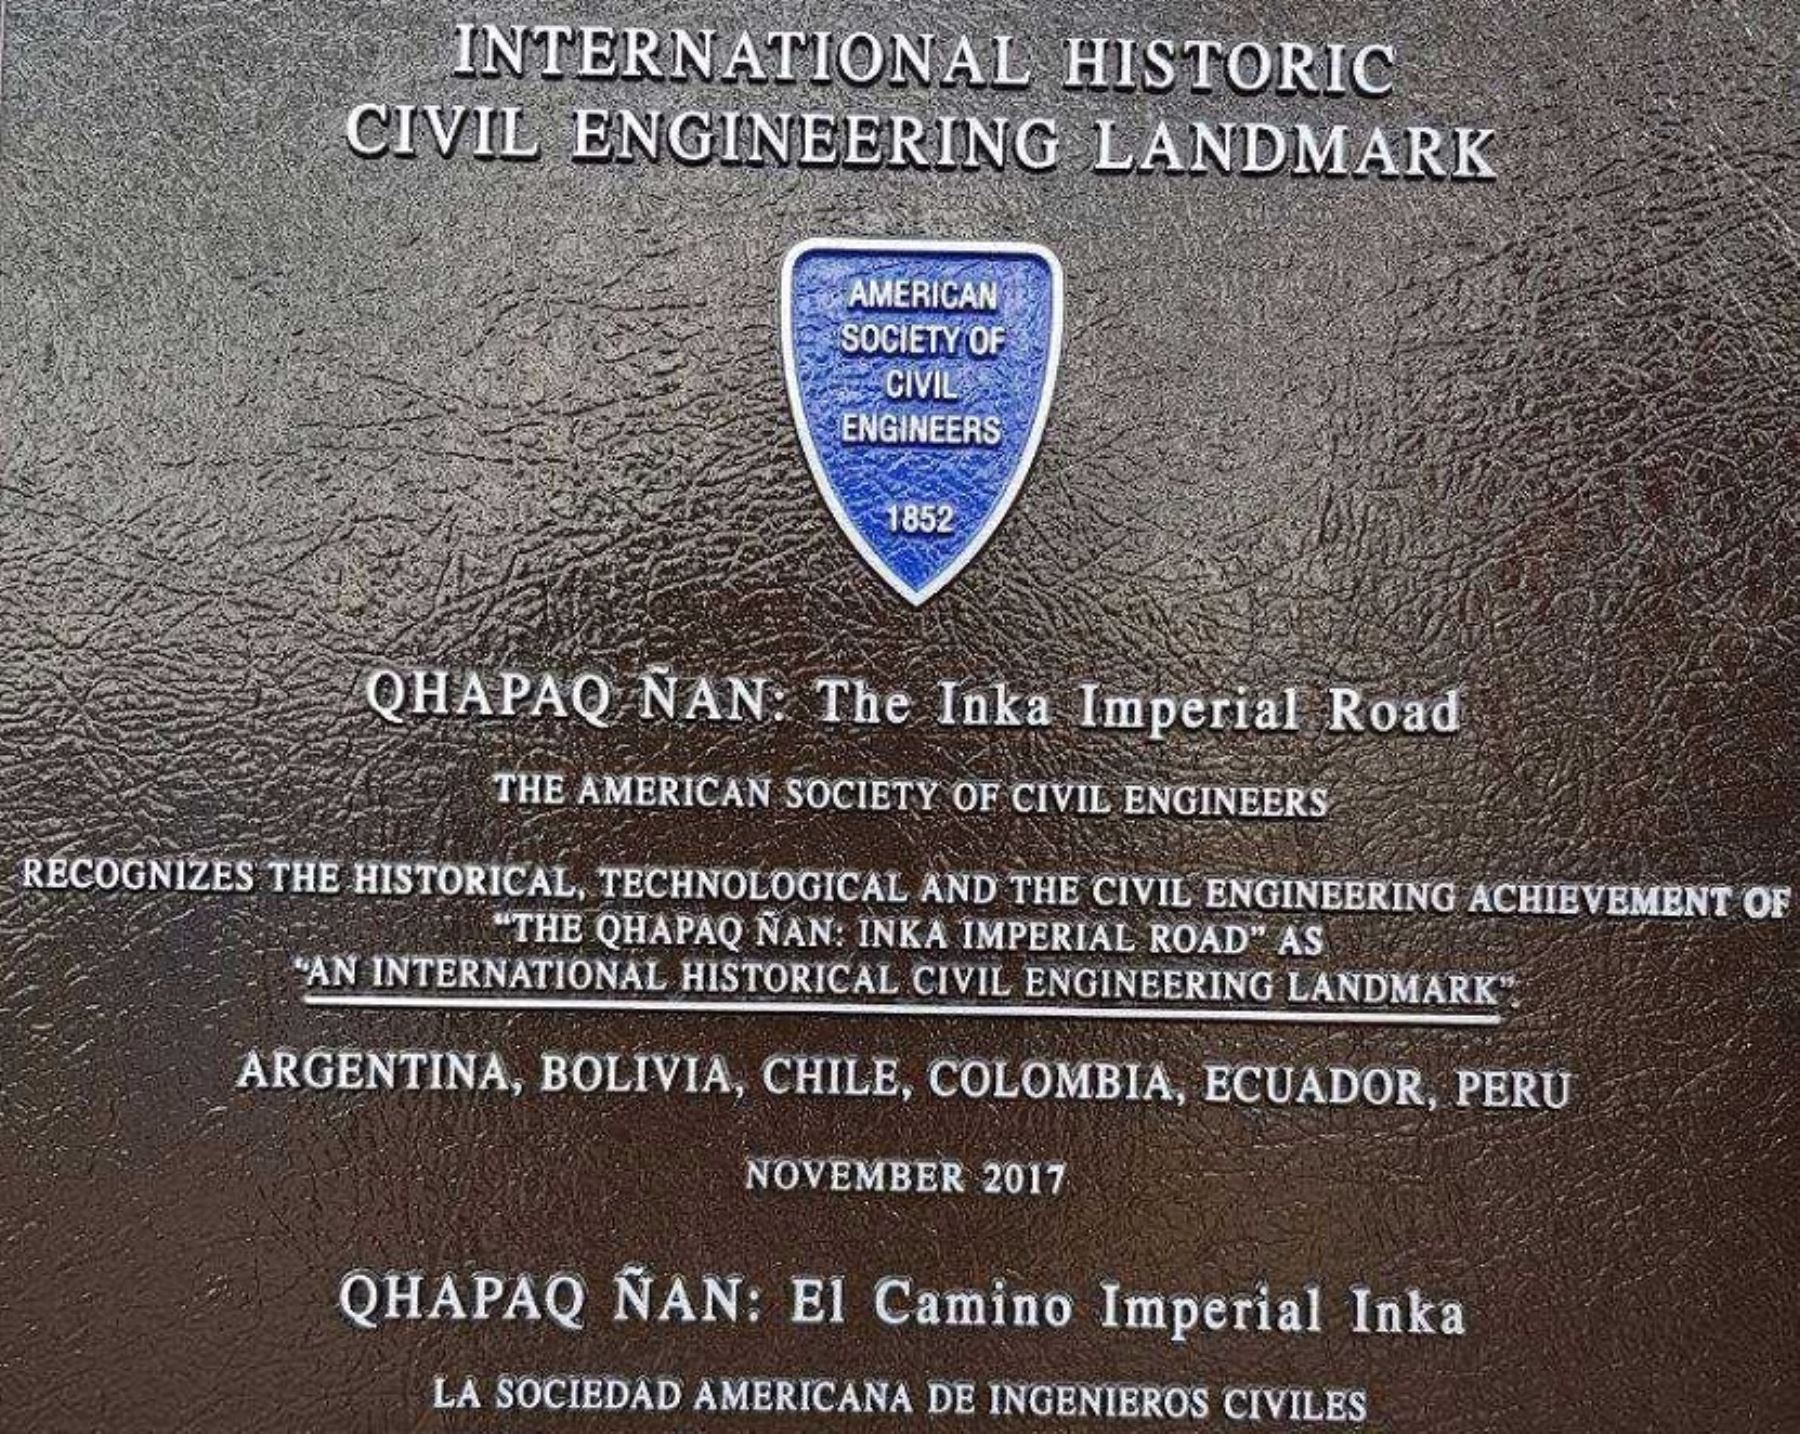 La Sociedad Americana de Ingenieros Civiles reconoció hoy al sistema vial andino Qhapaq Ñan como Emblema Histórico Internacional de la Ingeniría Civil, después de breve acto en la imponente portada del Rumiqolqa, ubicado en el parque arqueológico de Pikillaqta, en la región Cusco.